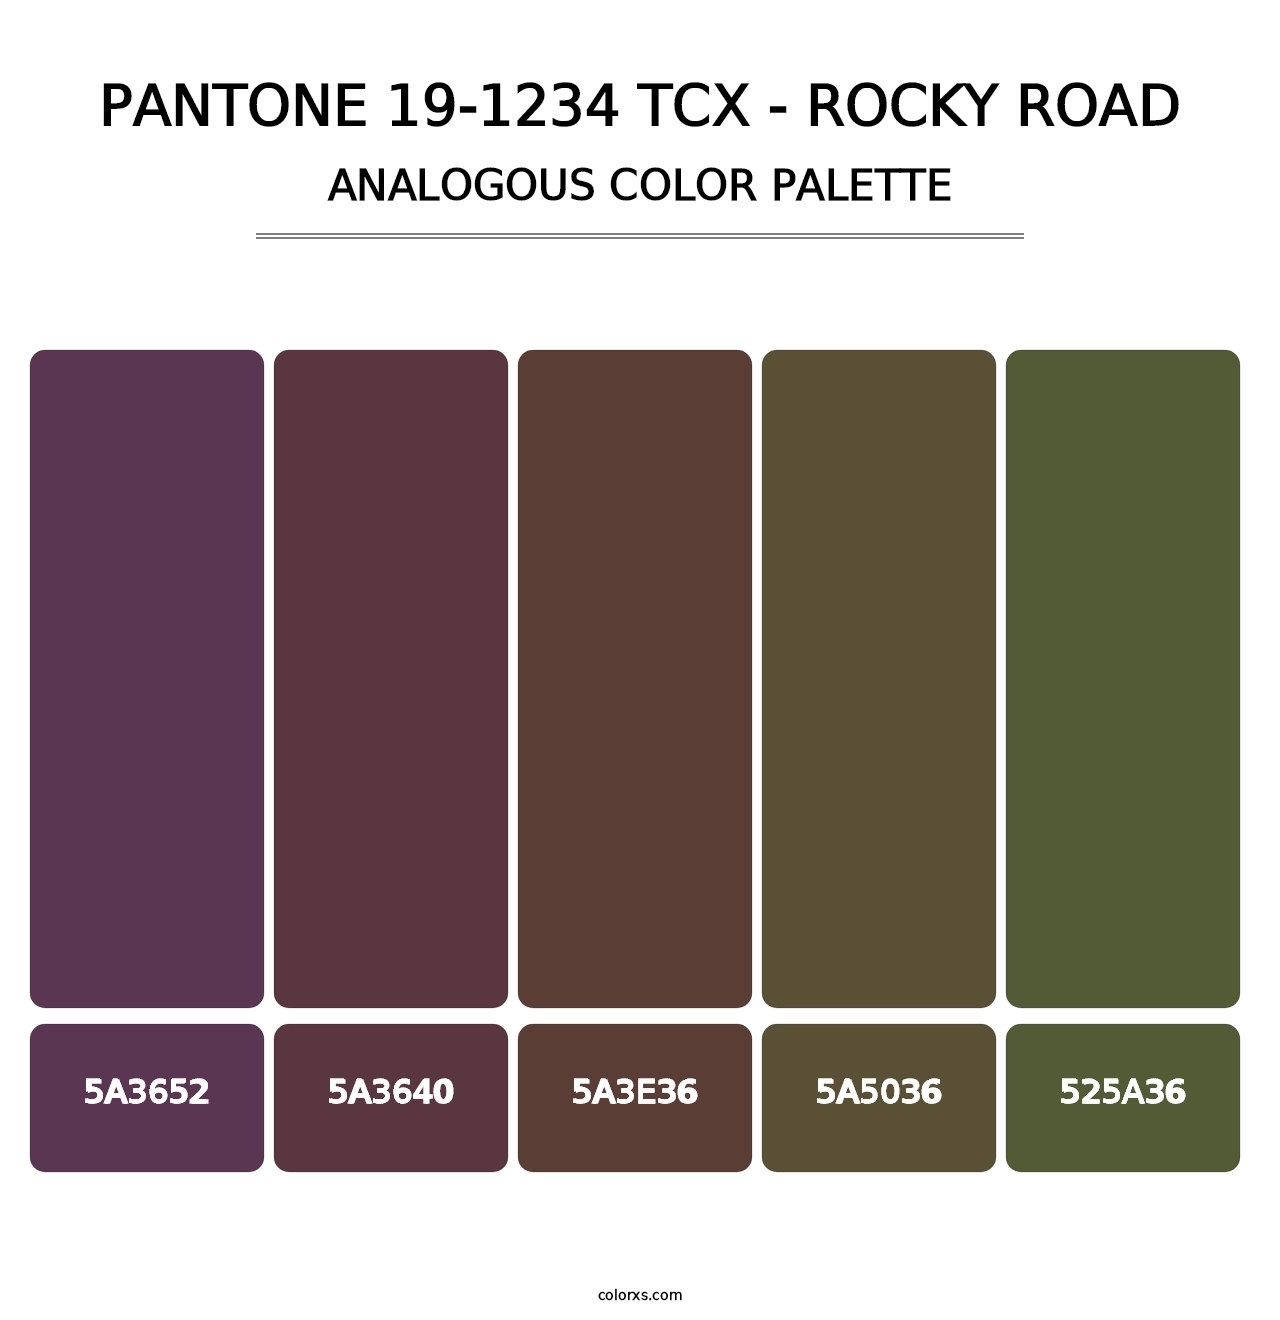 PANTONE 19-1234 TCX - Rocky Road - Analogous Color Palette